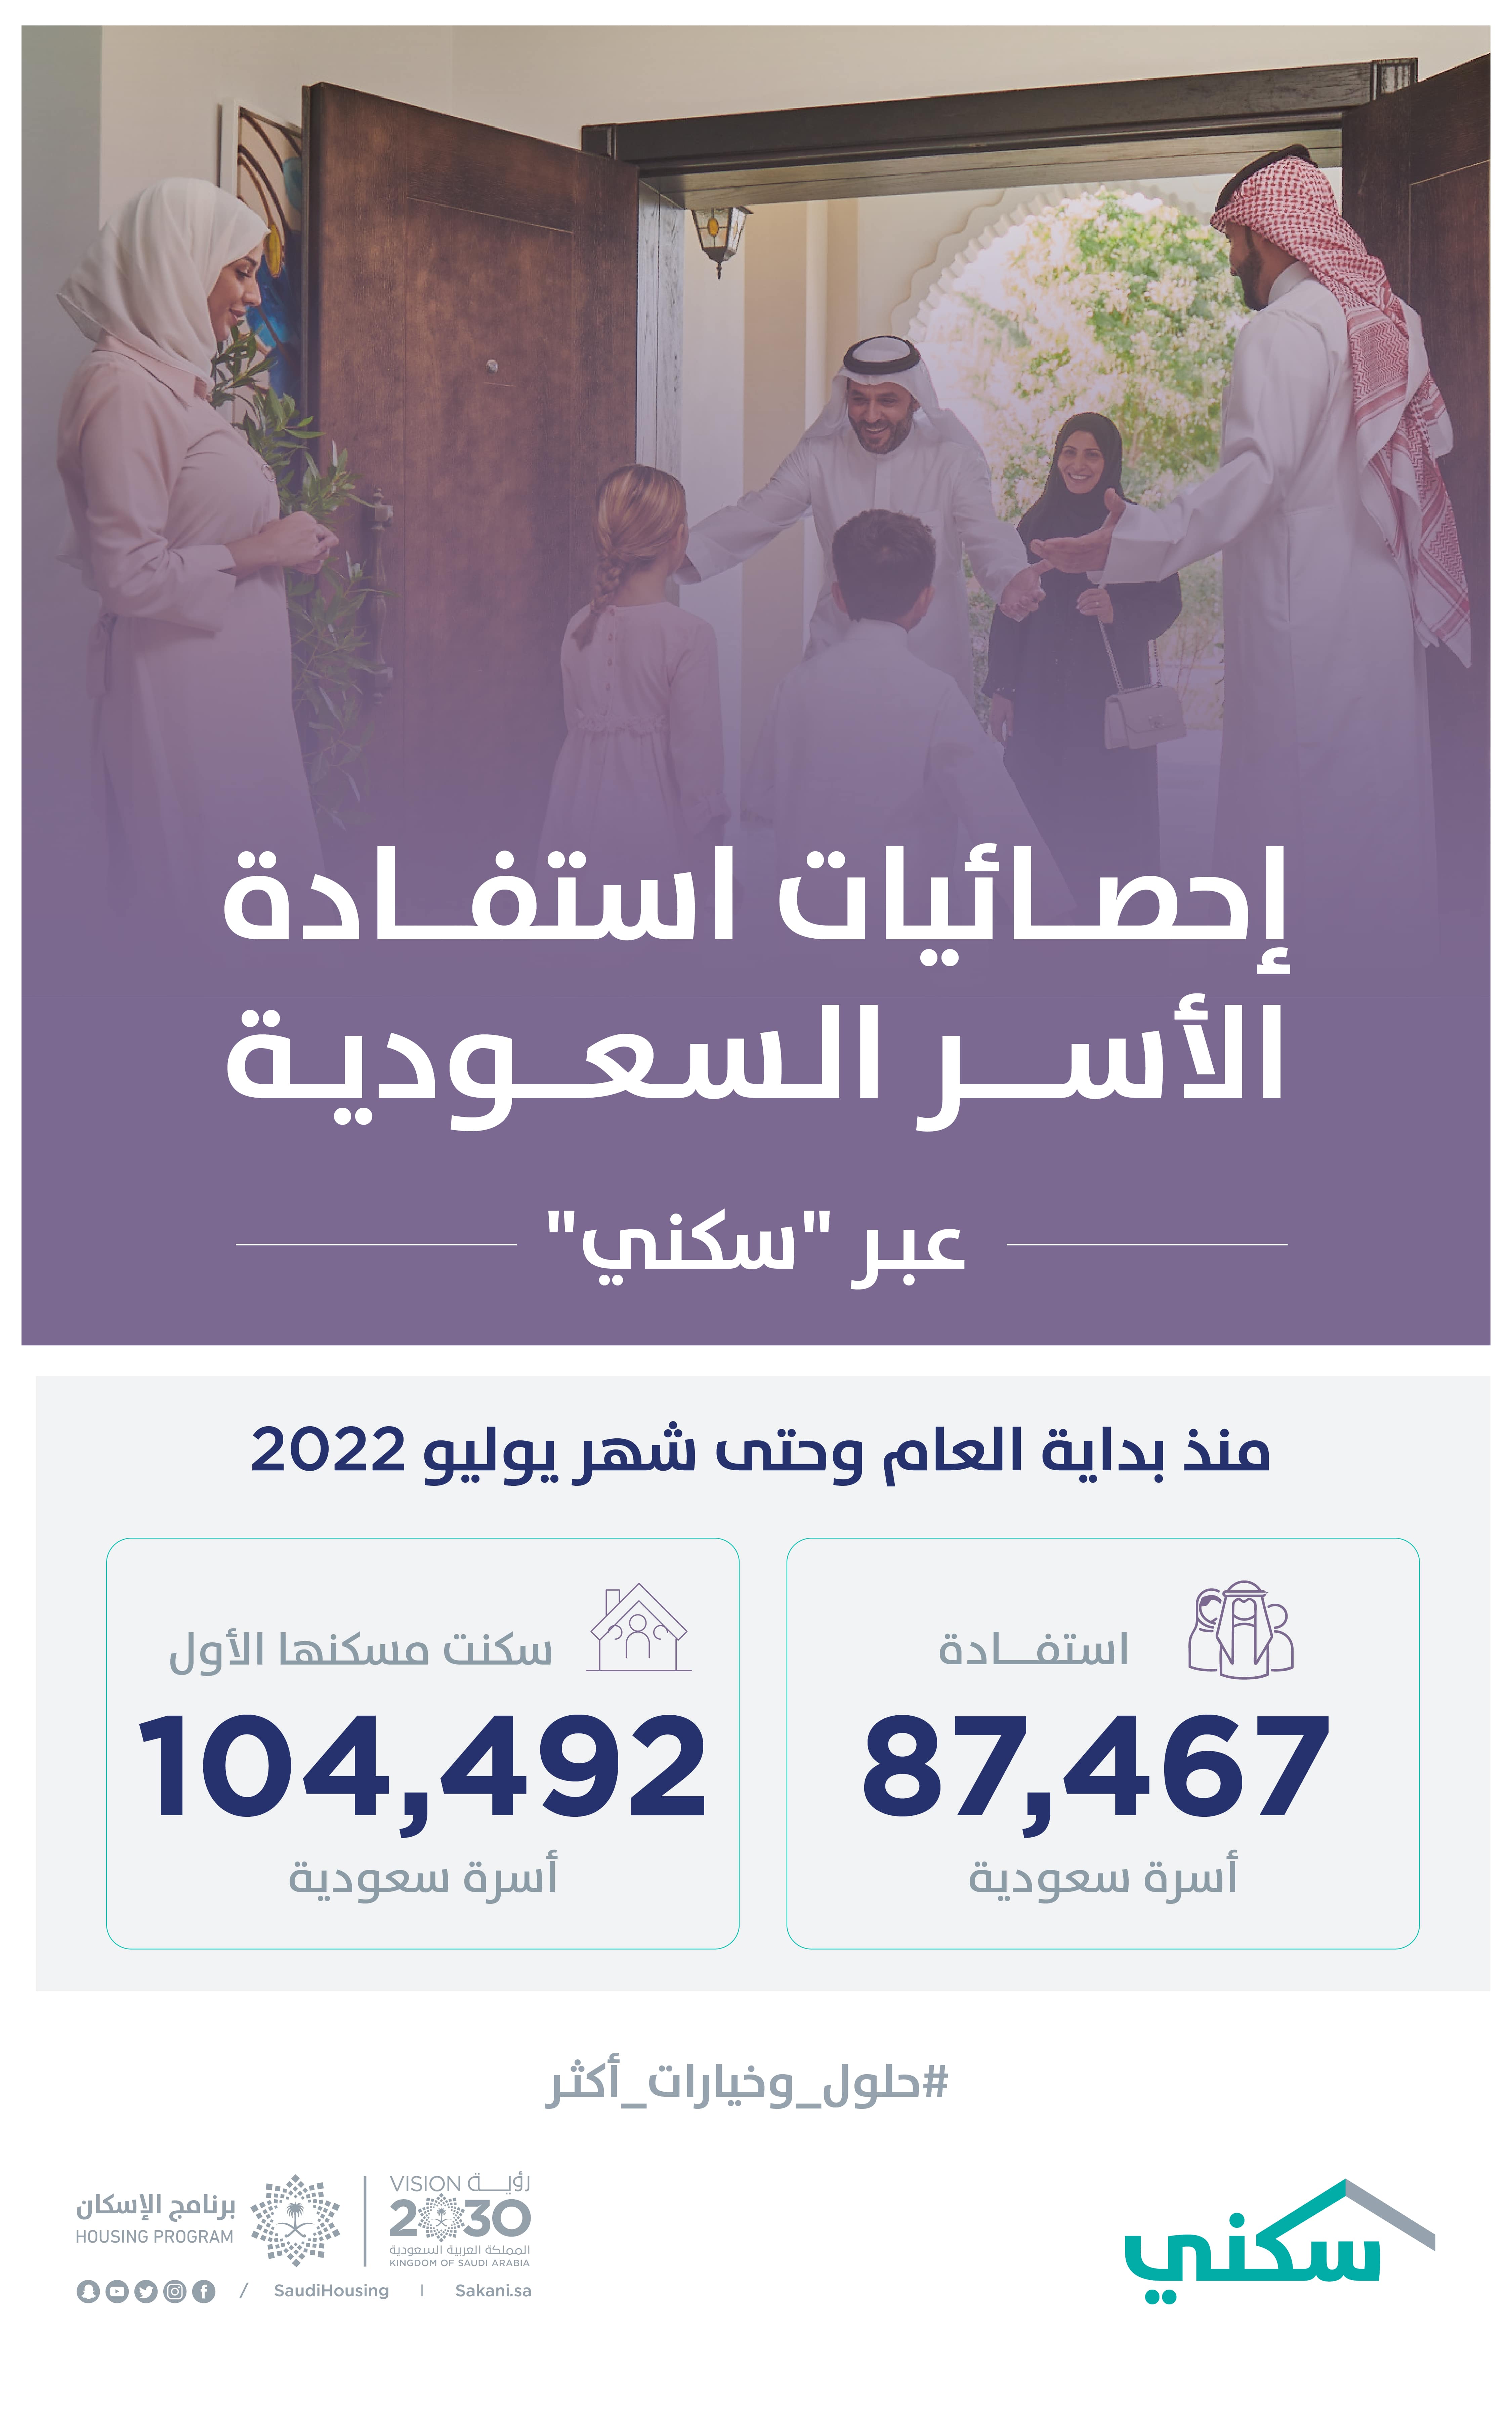 "سكني": أكثر من 104 آلاف أسرة سعودية سكنت مسكنها الأول حتى نهاية يوليو 2022